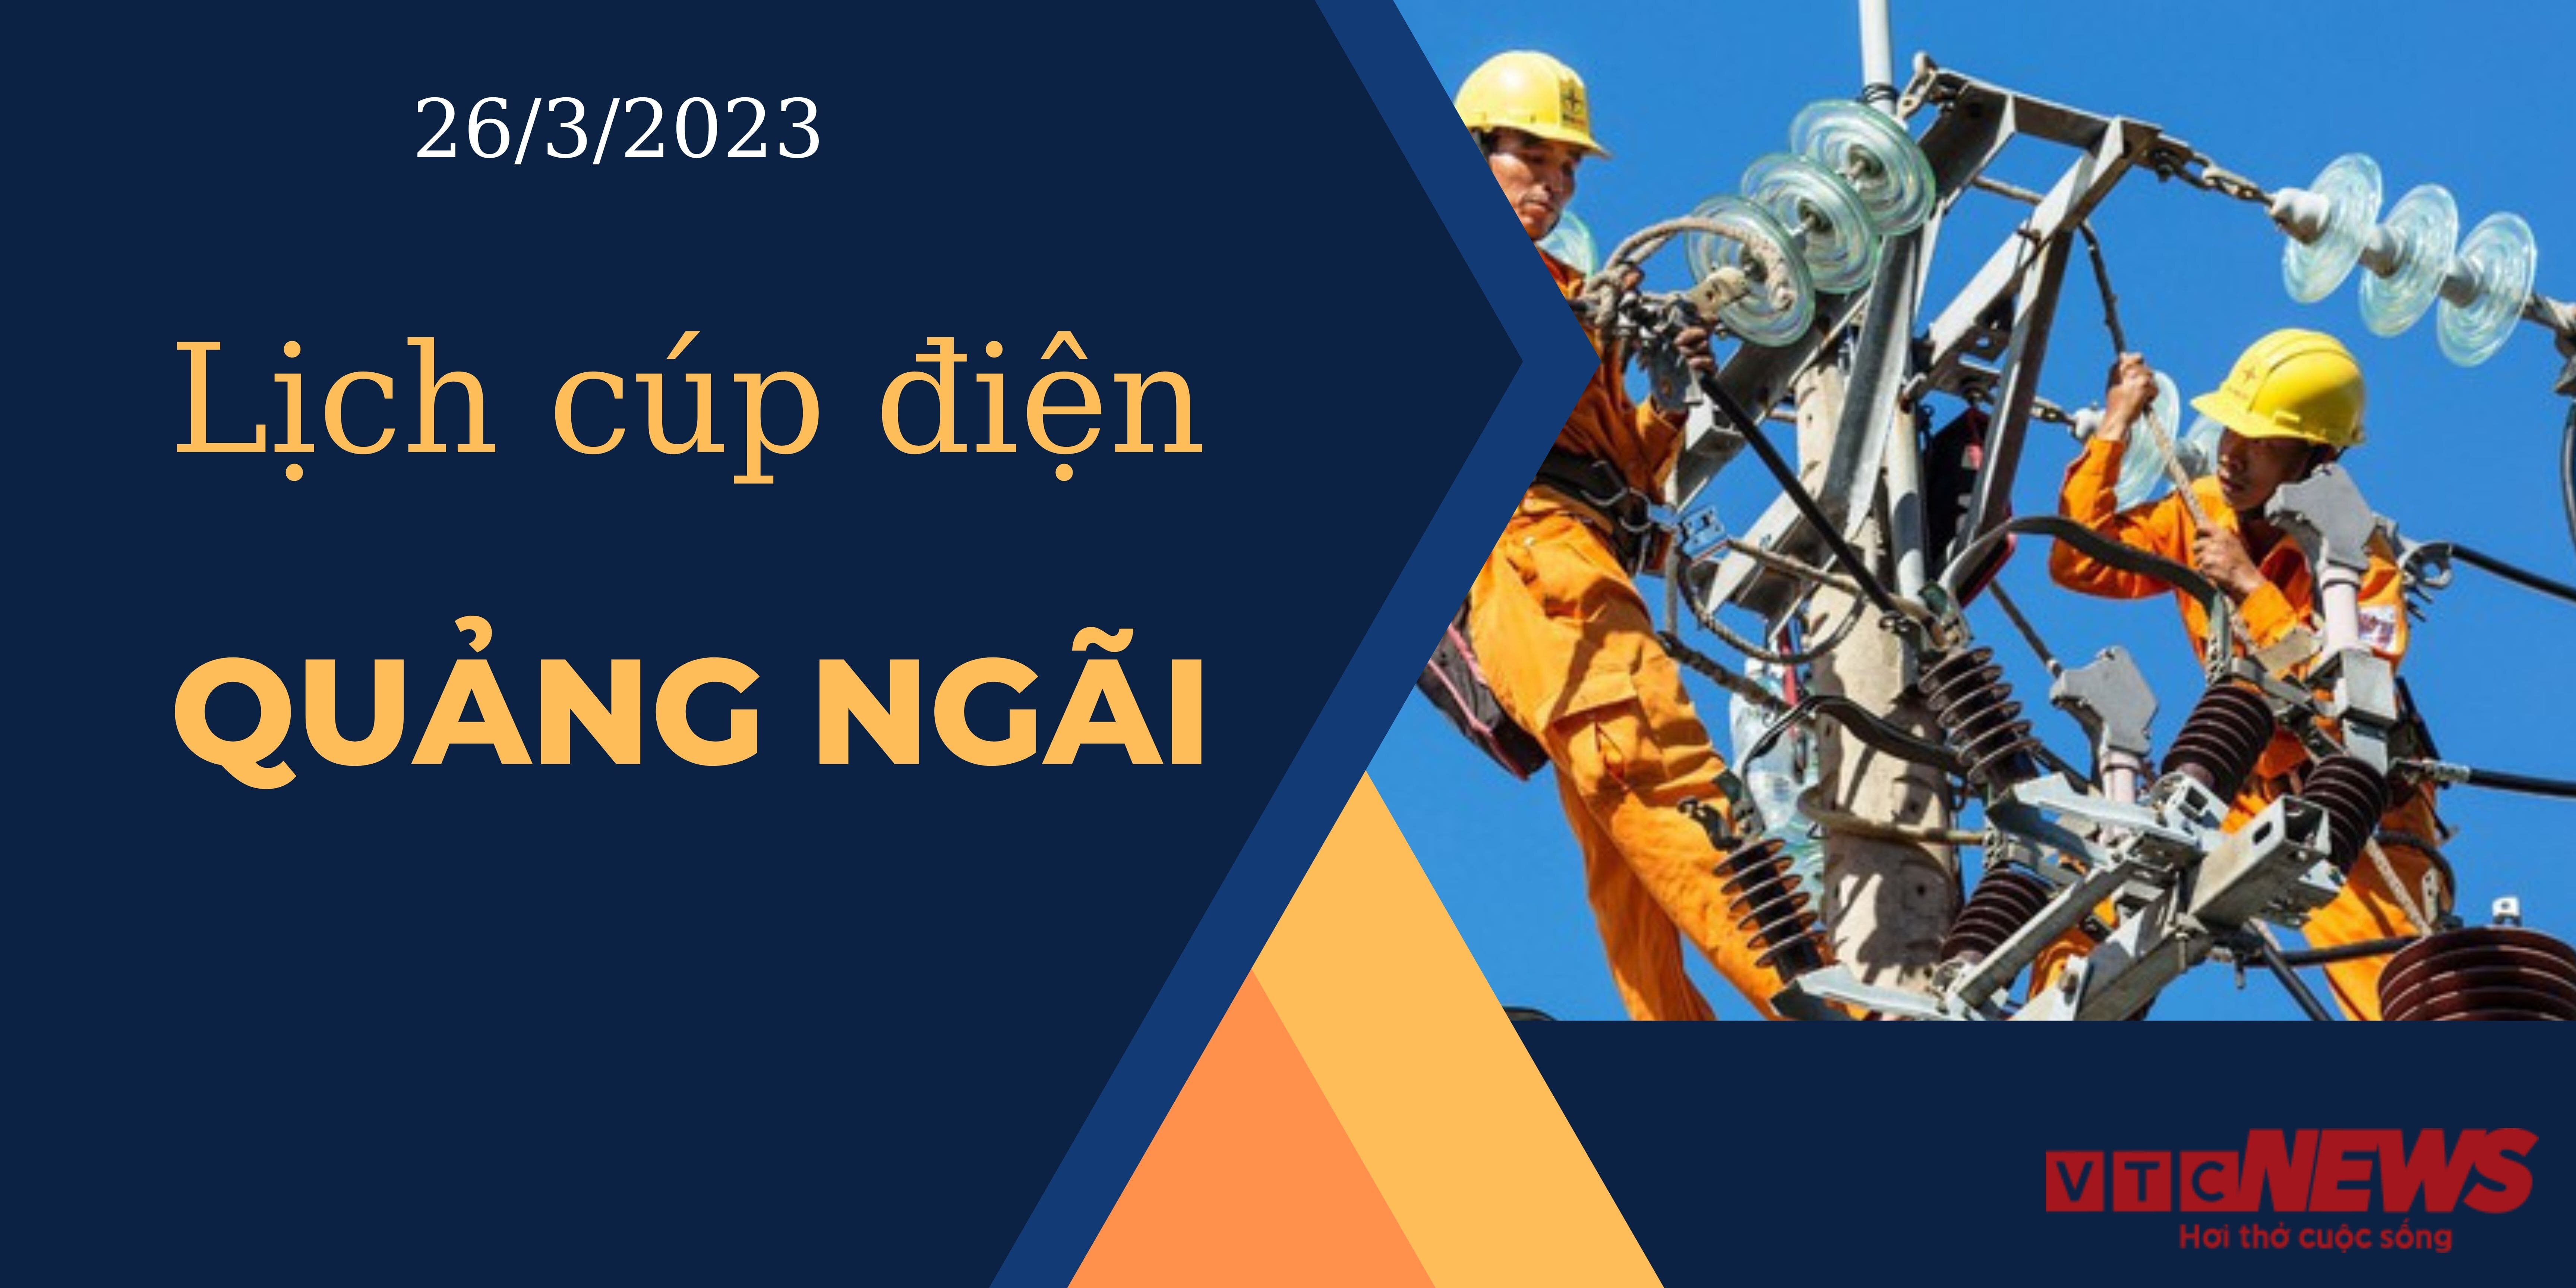 Lịch cúp điện hôm nay tại Quảng Ngãi ngày 26/03/2023 - 1